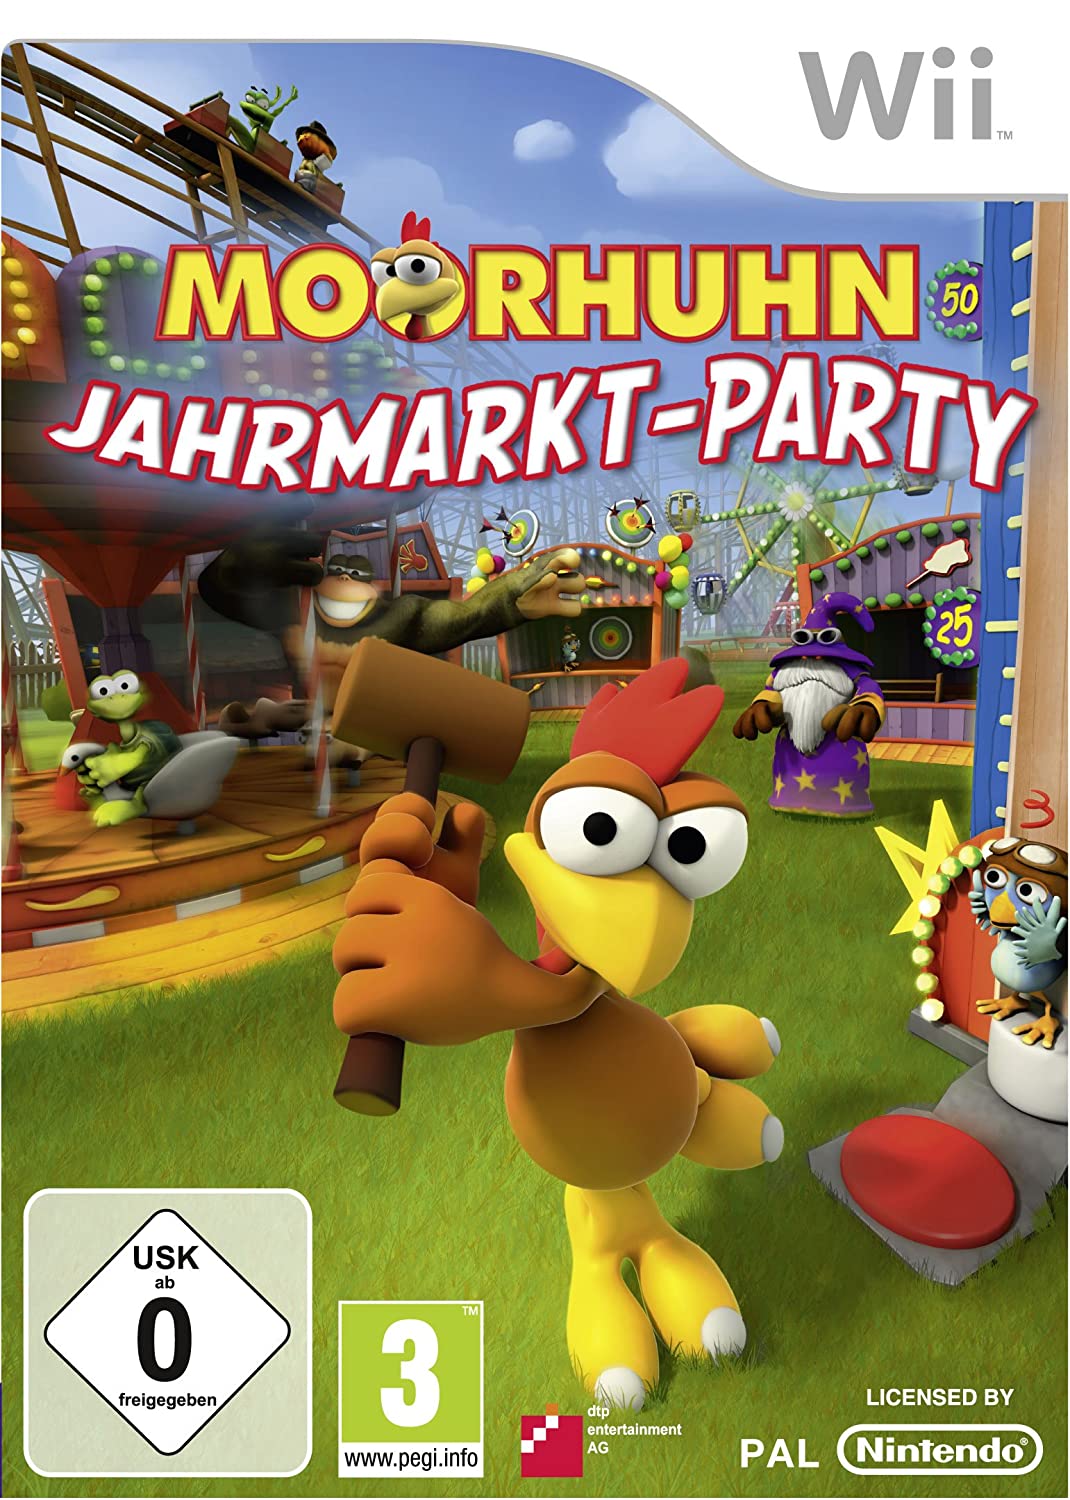 Moorhuhn - Jahrmarkt Party